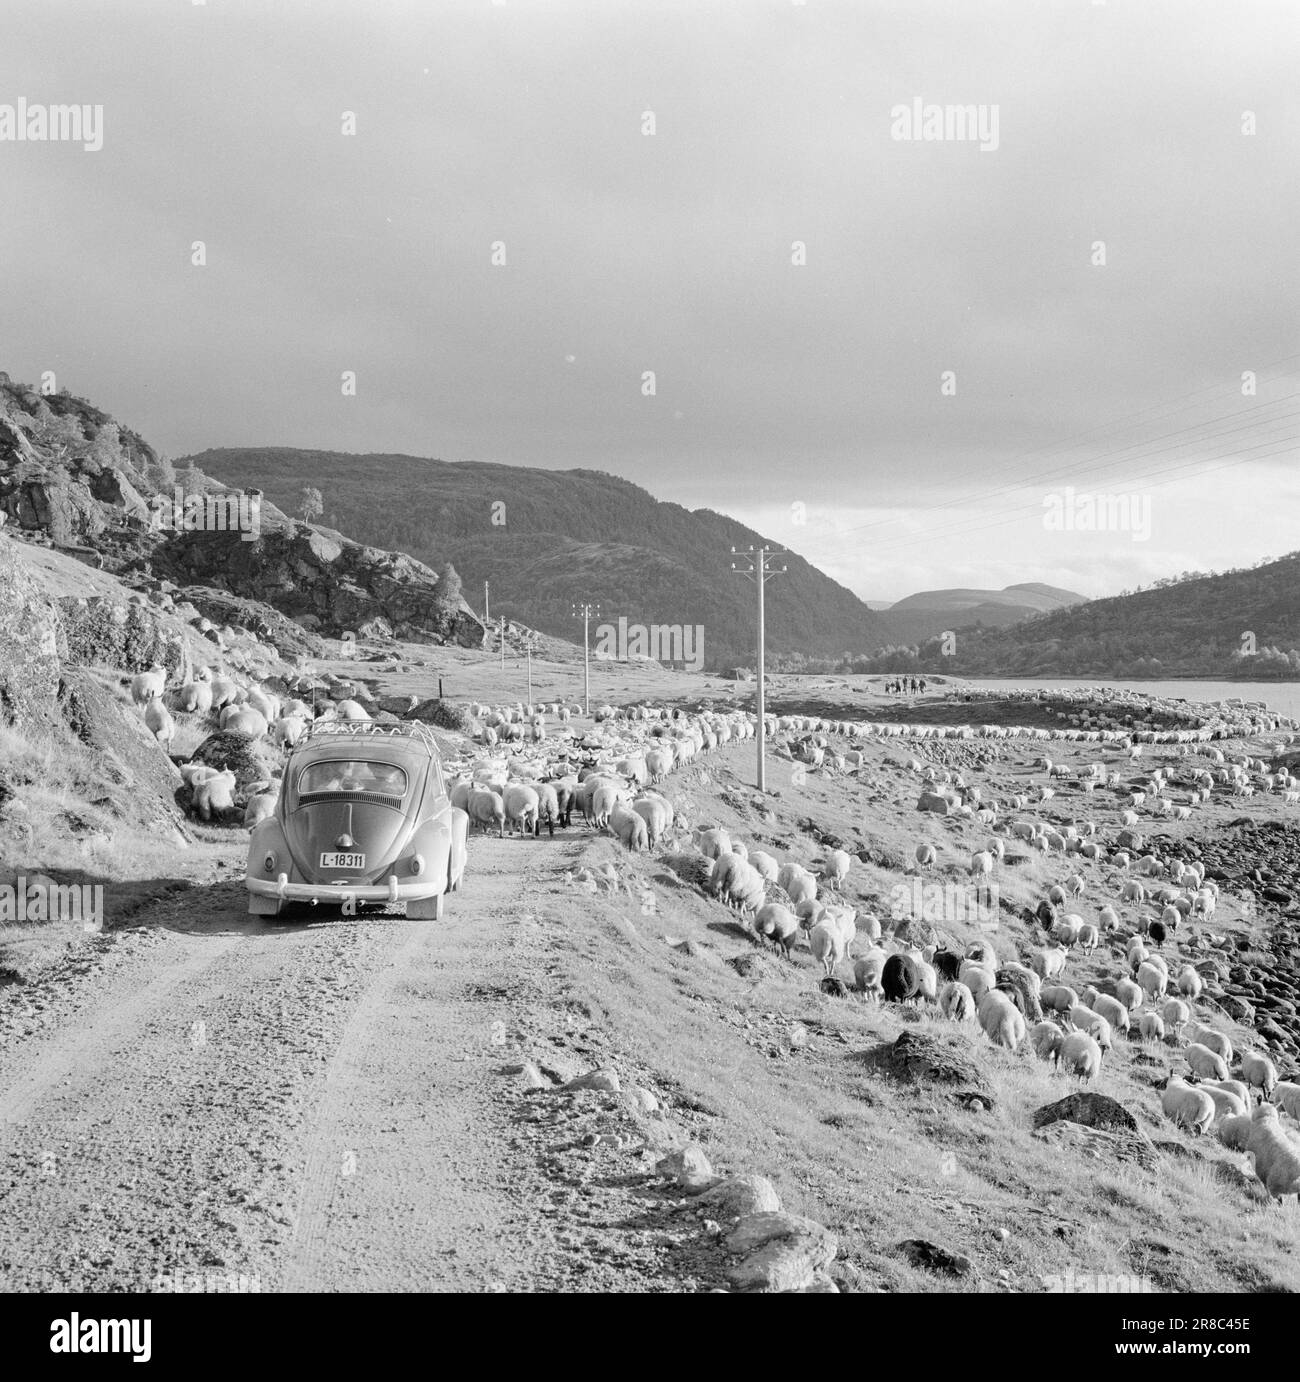 Actuel 42-1-1960: Bye Bye!! L'été est terminé. Troupeau de moutons à Sirdal. Les moutons sont ramenés du pâturage d'été. Kilomètre après kilomètre, le ruisseau de chair du détroit se déforme dans la vallée. Tandis que les fermes de moutons sont sur leur chemin vers les pots de viande, d'autres trafics doivent céder la place. Photo: Ivar Aaserud / Aktuell / NTB ***PHOTO NON TRAITÉE*** Banque D'Images